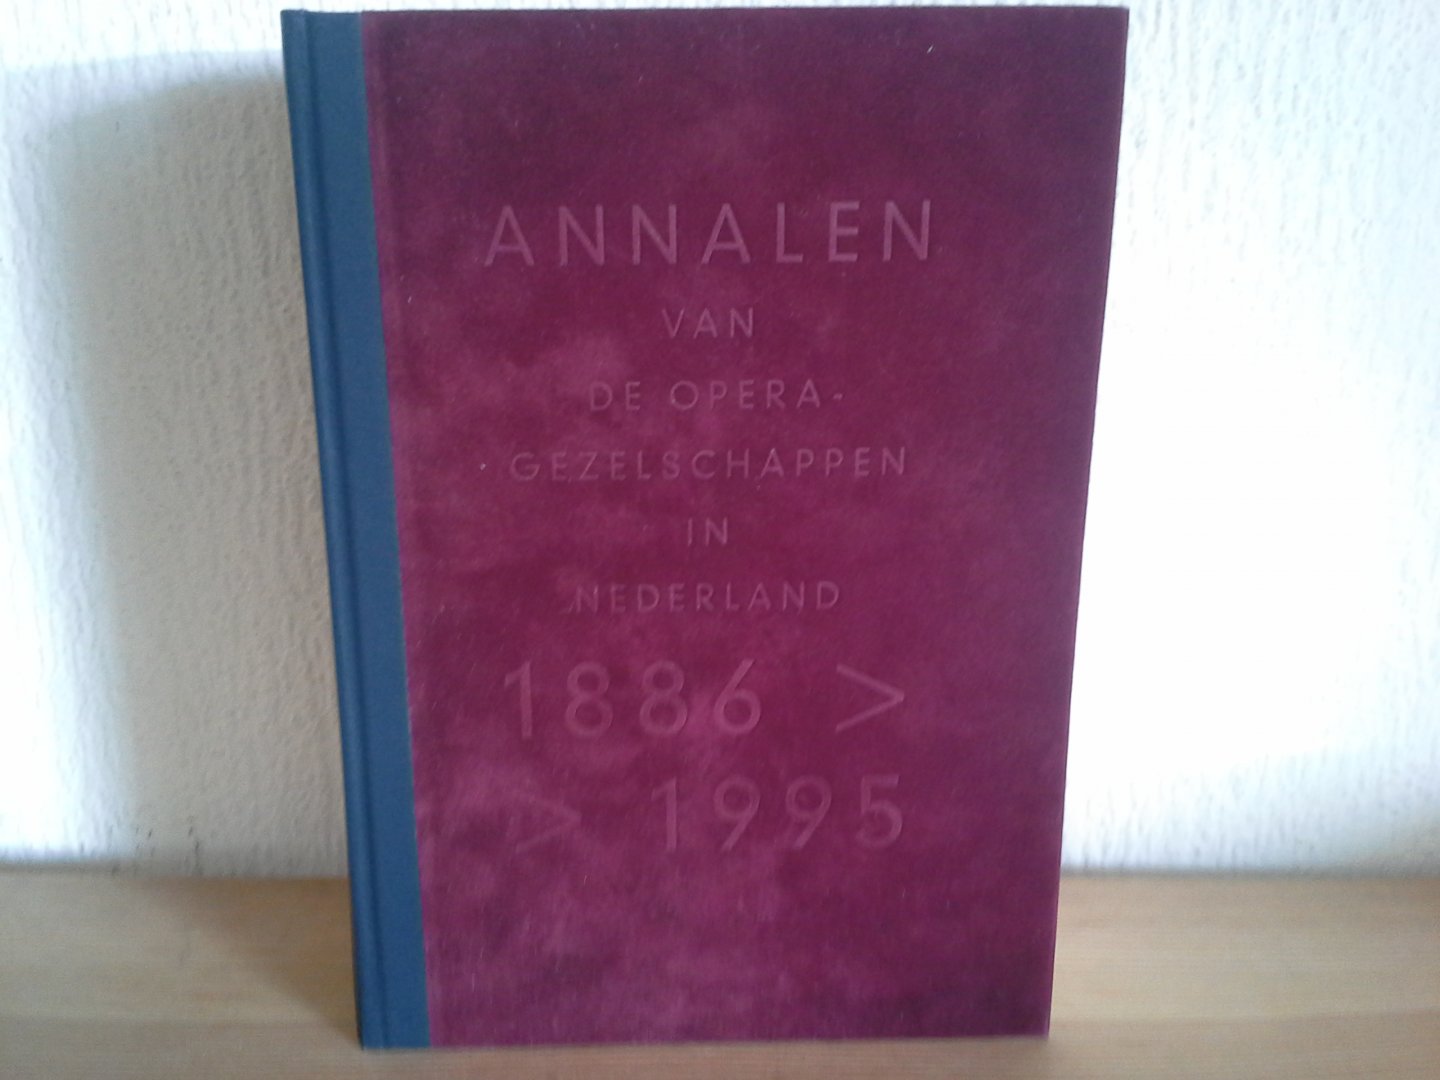  - ANNALEN VAN DE OPERA GEZELSCHAPPEN IN NEDERLAND 1886-1995